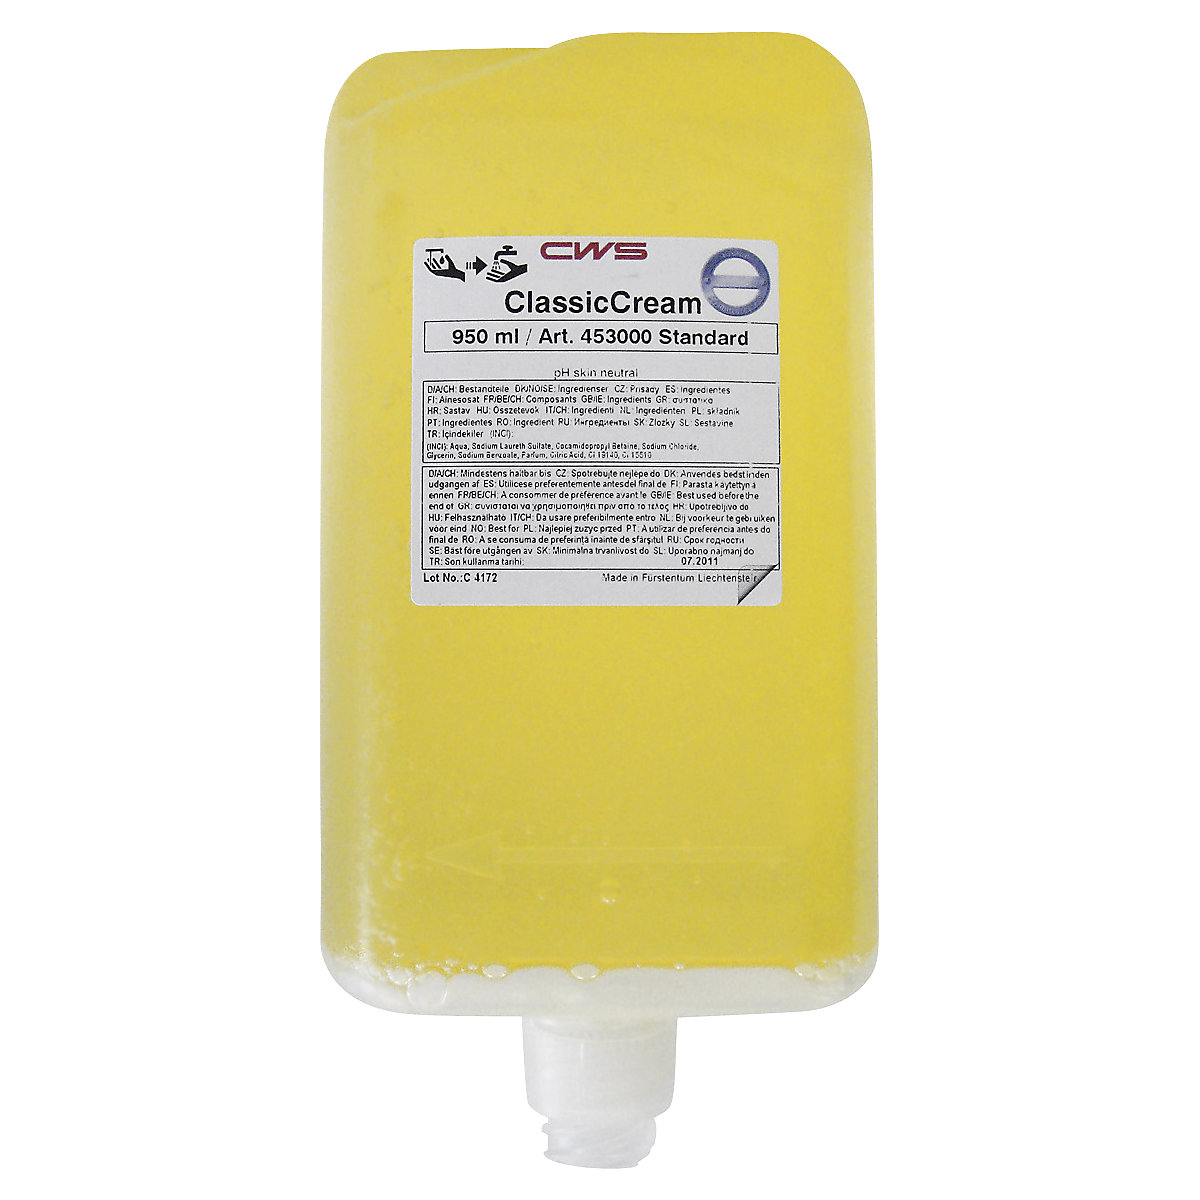 Mydlový krém Classic Cream – CWS, OJ 12 ks 0,5-litrových fliaš, žltý, s citrusovou vôňou-2